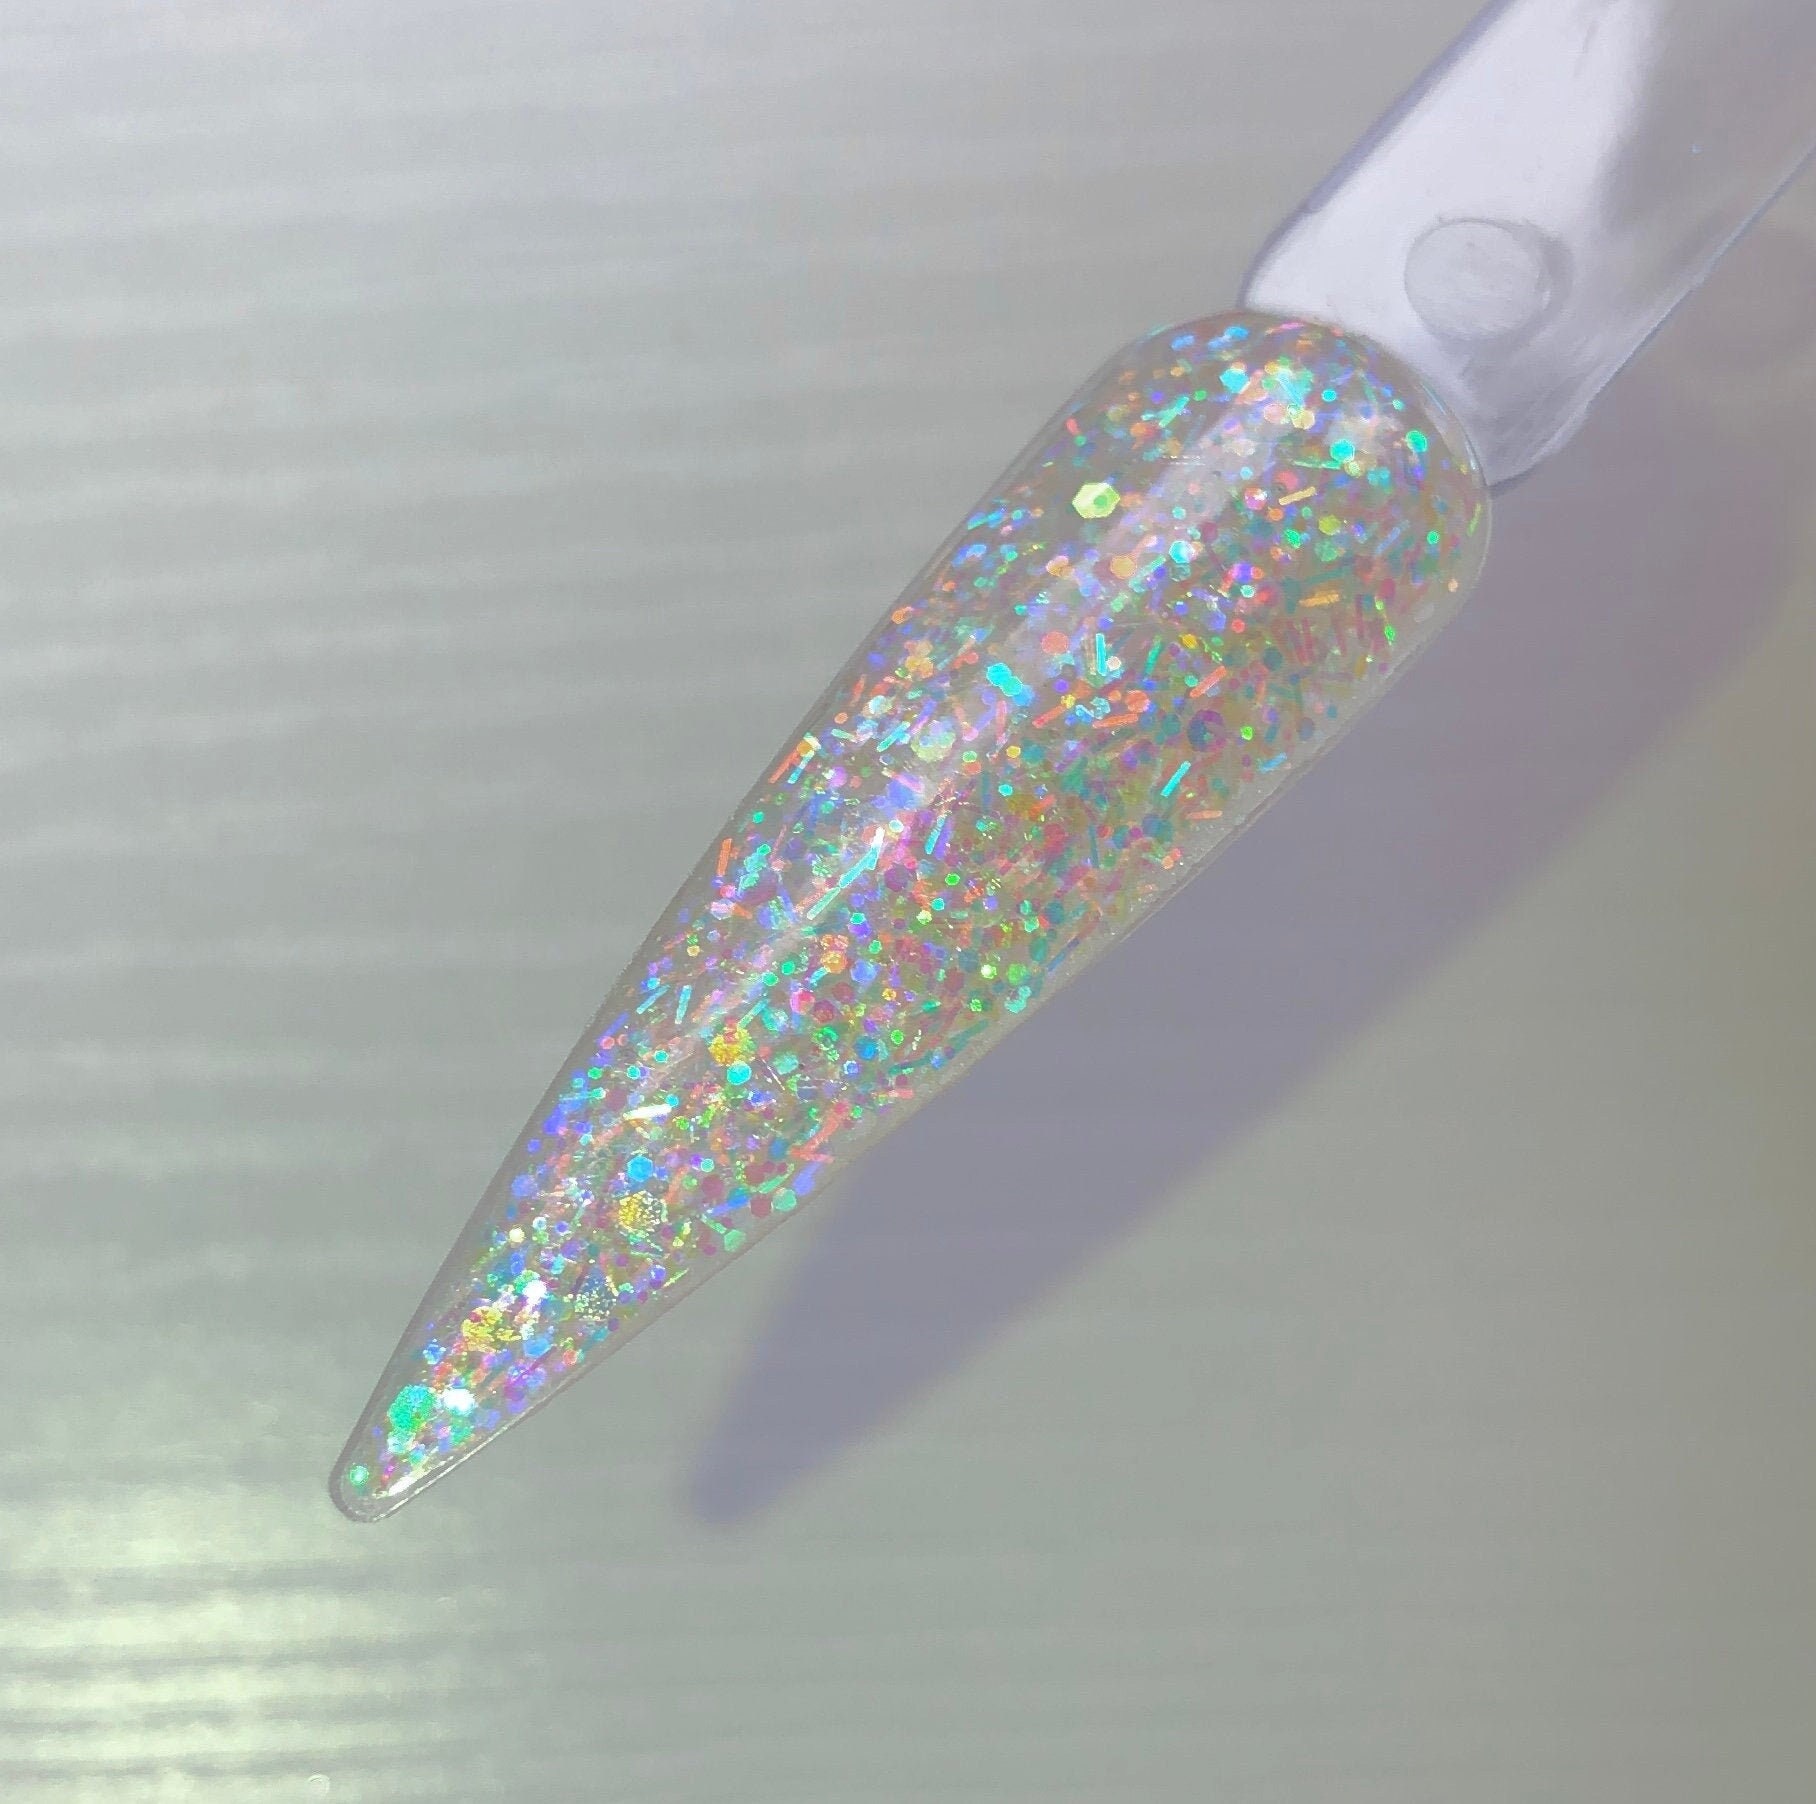 Acrylic Powder Dip Powder Dips Acrylic Powder for Nails | Etsy